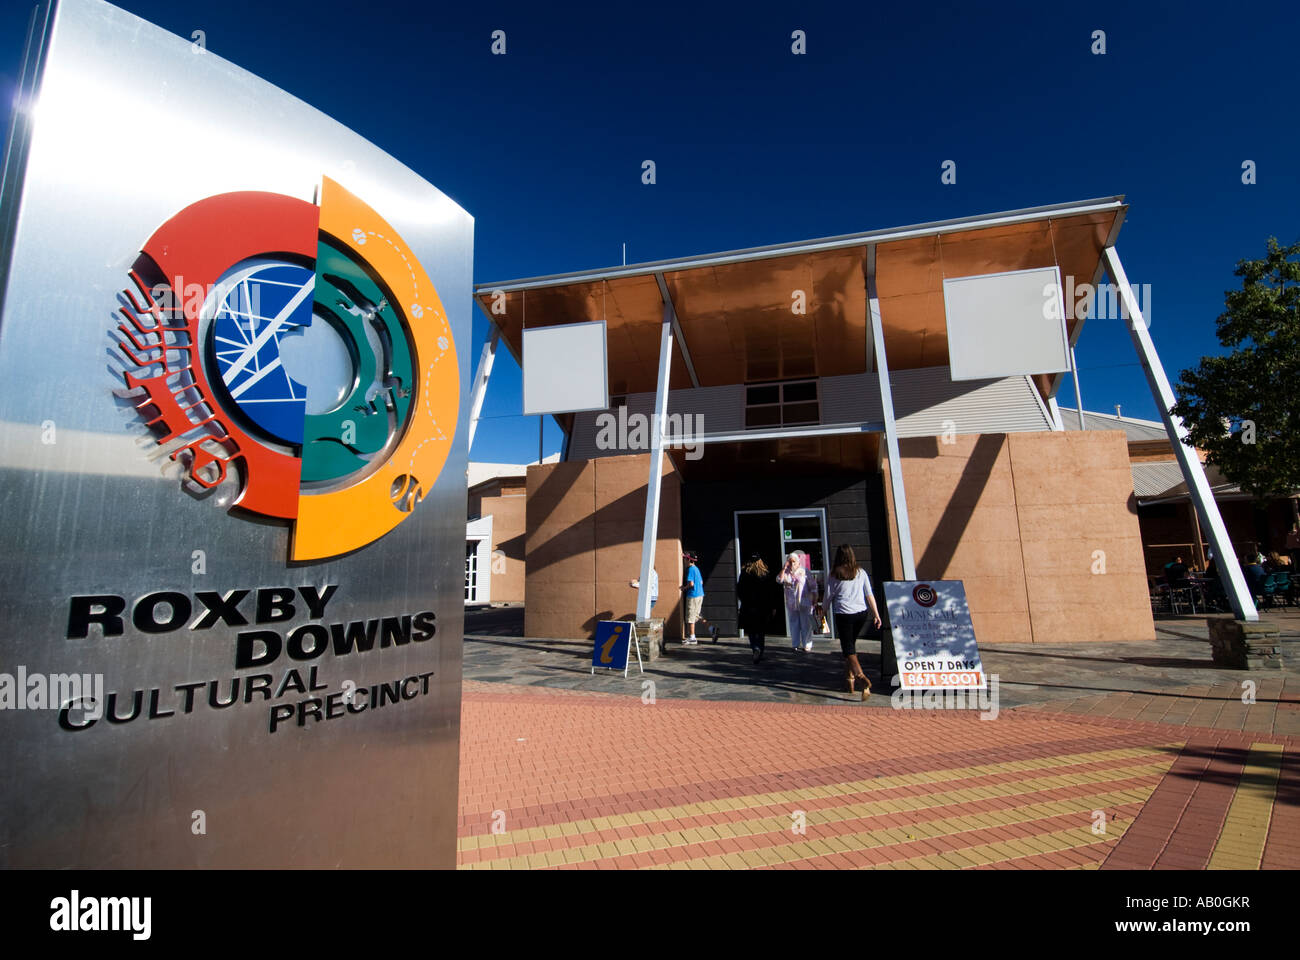 Dans le centre culturel d'Roxby Downs Australie du Sud 2007 Banque D'Images